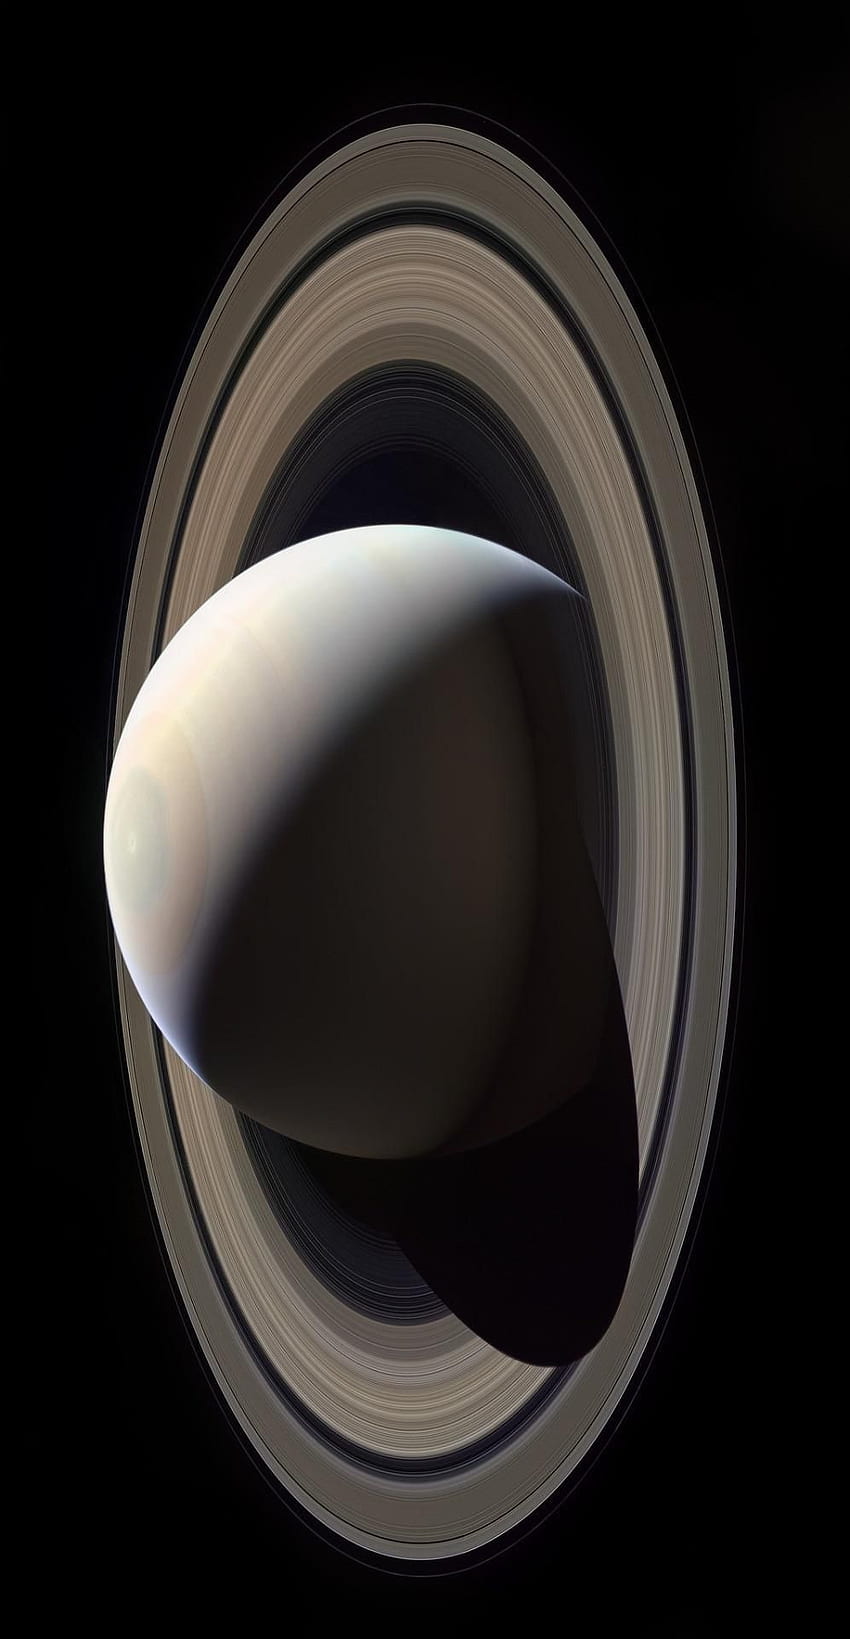 Saturno capturado por la nave espacial Cassini de la NASA. Cassini spacecraft, Space nasa, Space planets fondo de pantalla del teléfono